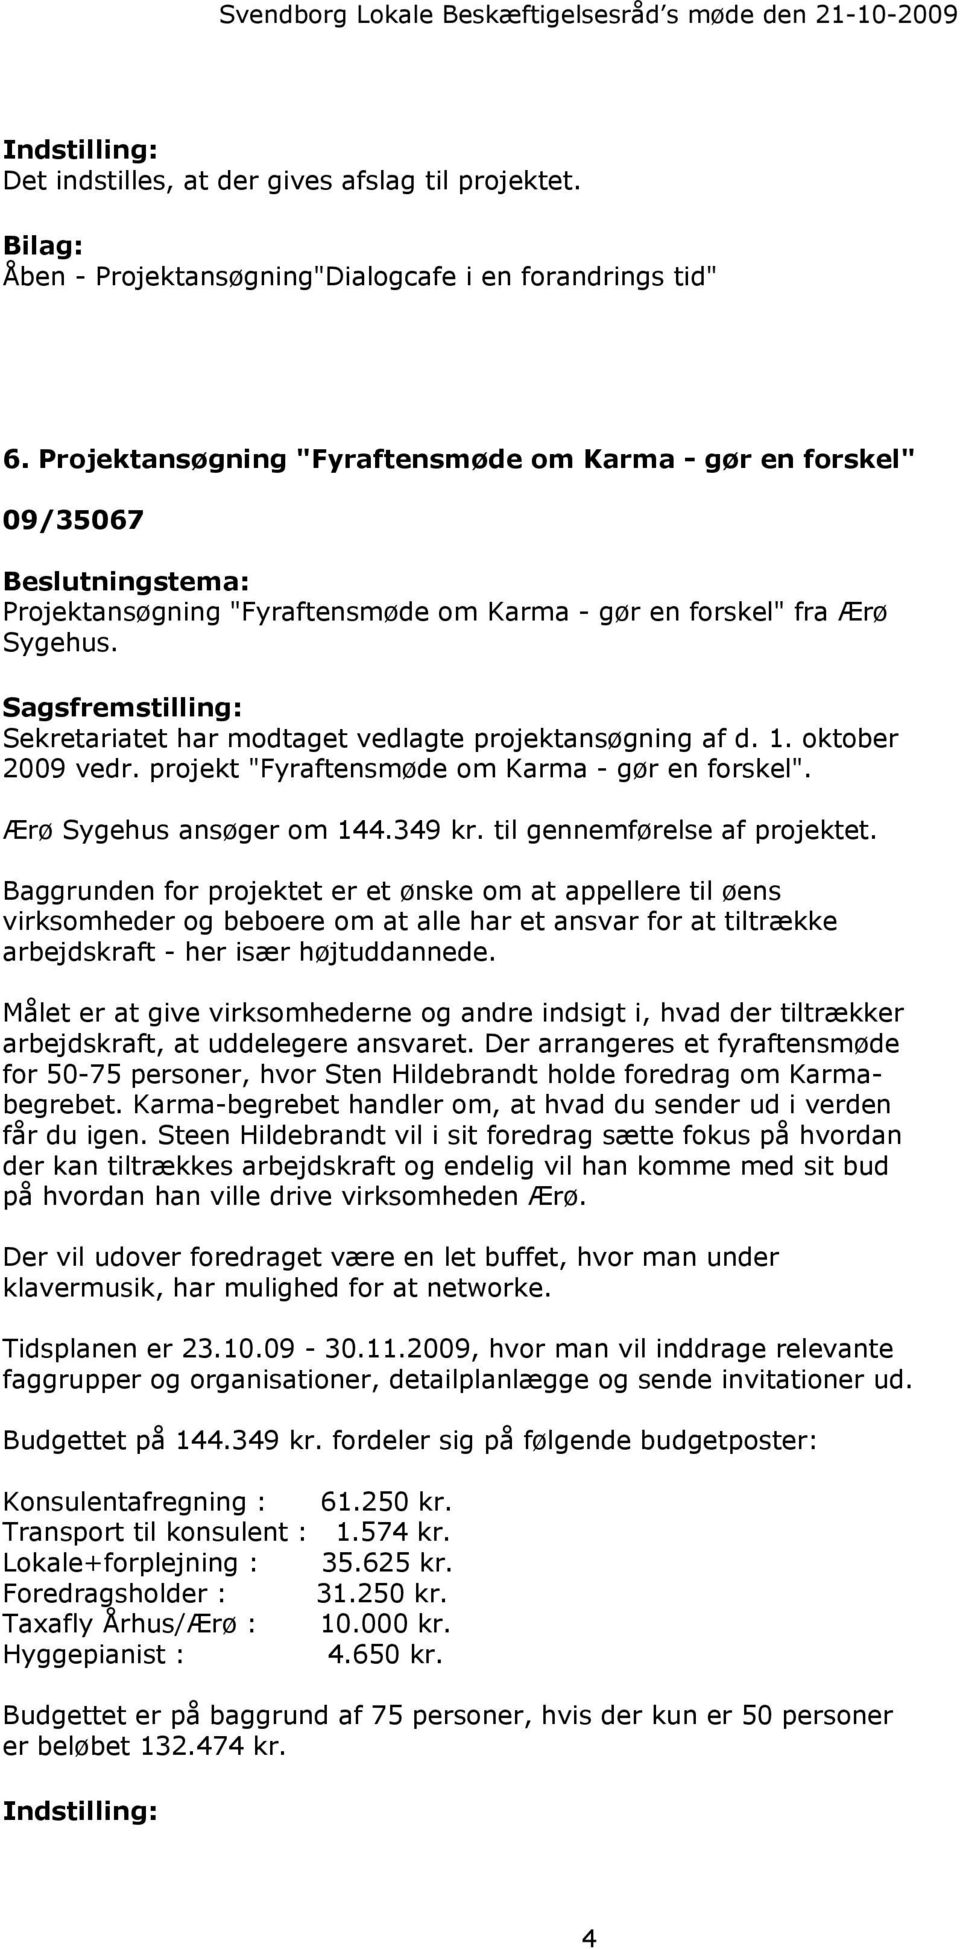 Sagsfremstilling: Sekretariatet har modtaget vedlagte projektansøgning af d. 1. oktober 2009 vedr. projekt "Fyraftensmøde om Karma - gør en forskel". Ærø Sygehus ansøger om 144.349 kr.